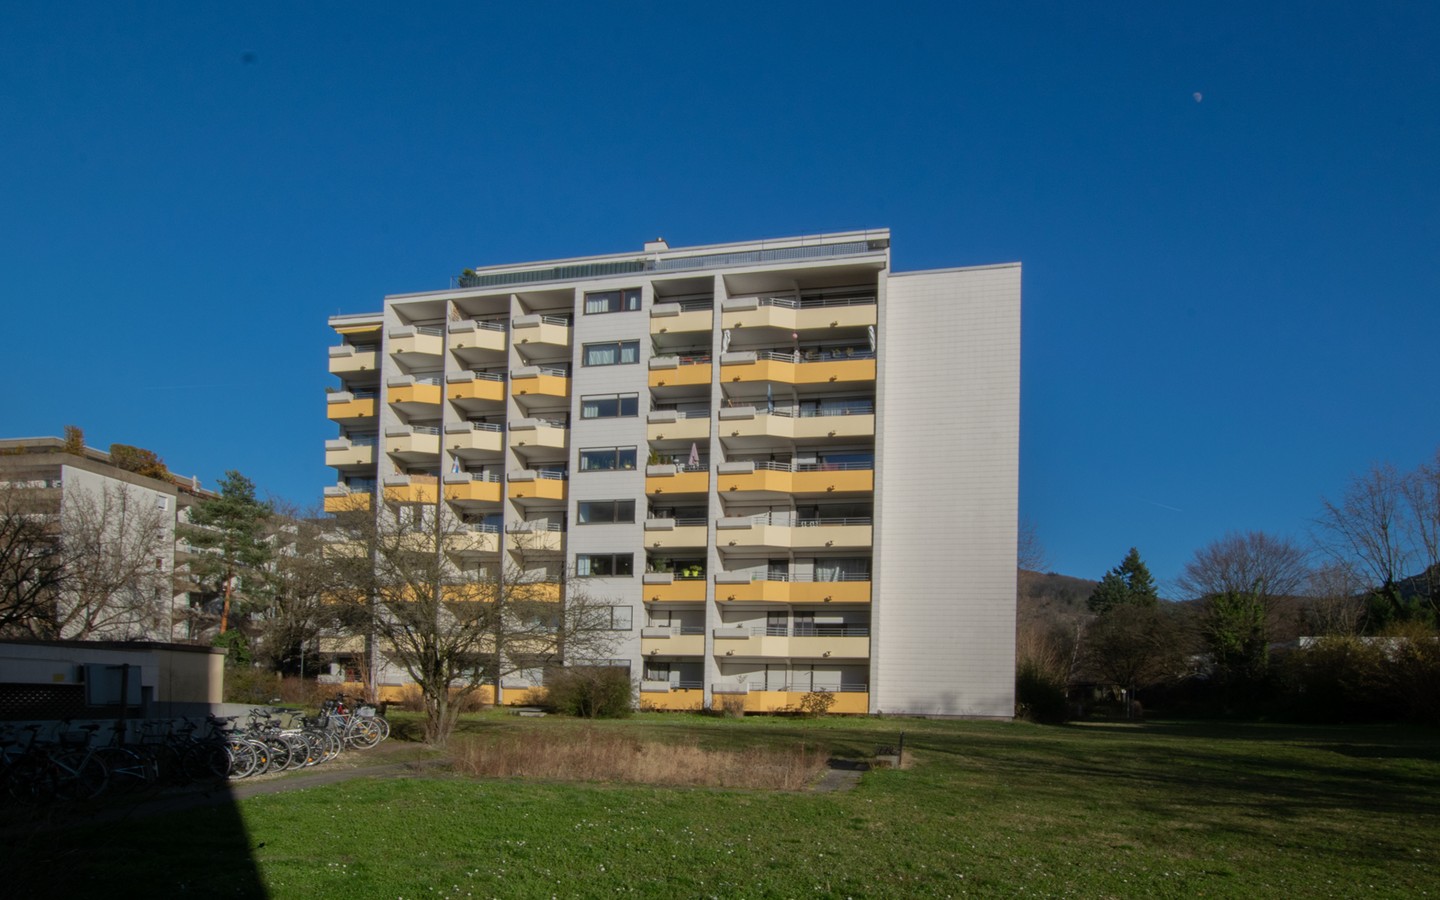 Rückseite - Handschuhsheim: Vermietete 1-Zimmer-Wohnung mit Loggia und TG-Stellplatz in attraktiver Lage